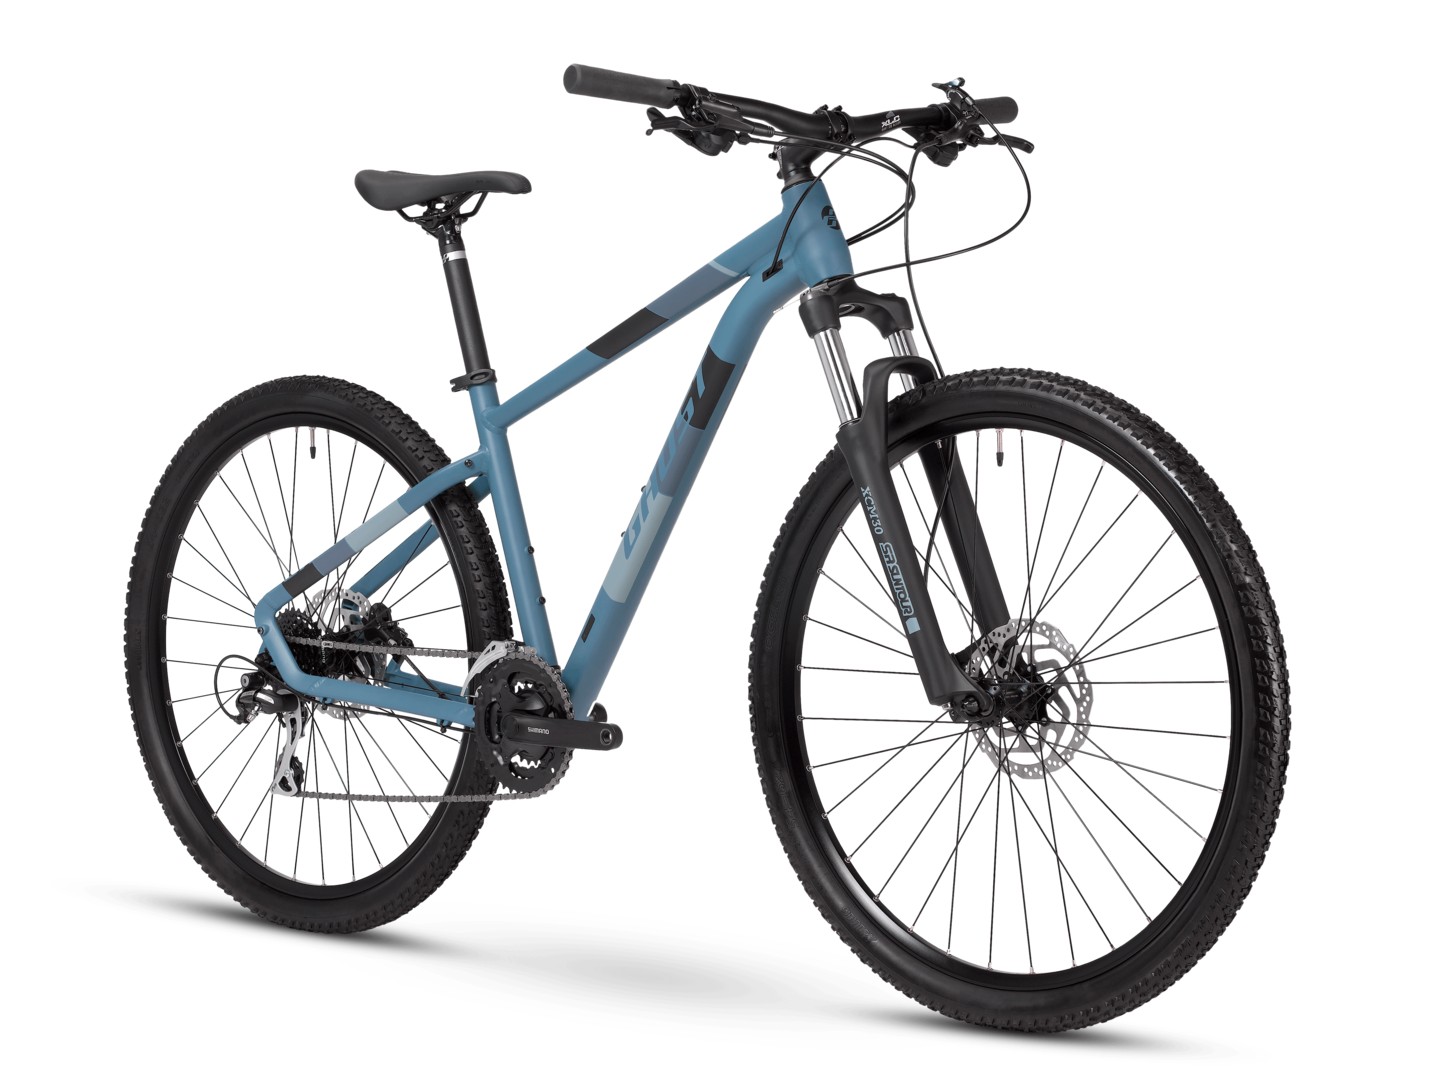 Горный велосипед Ghost Kato Essential 29, год 2021, цвет Синий-Черный, ростовка 17.5